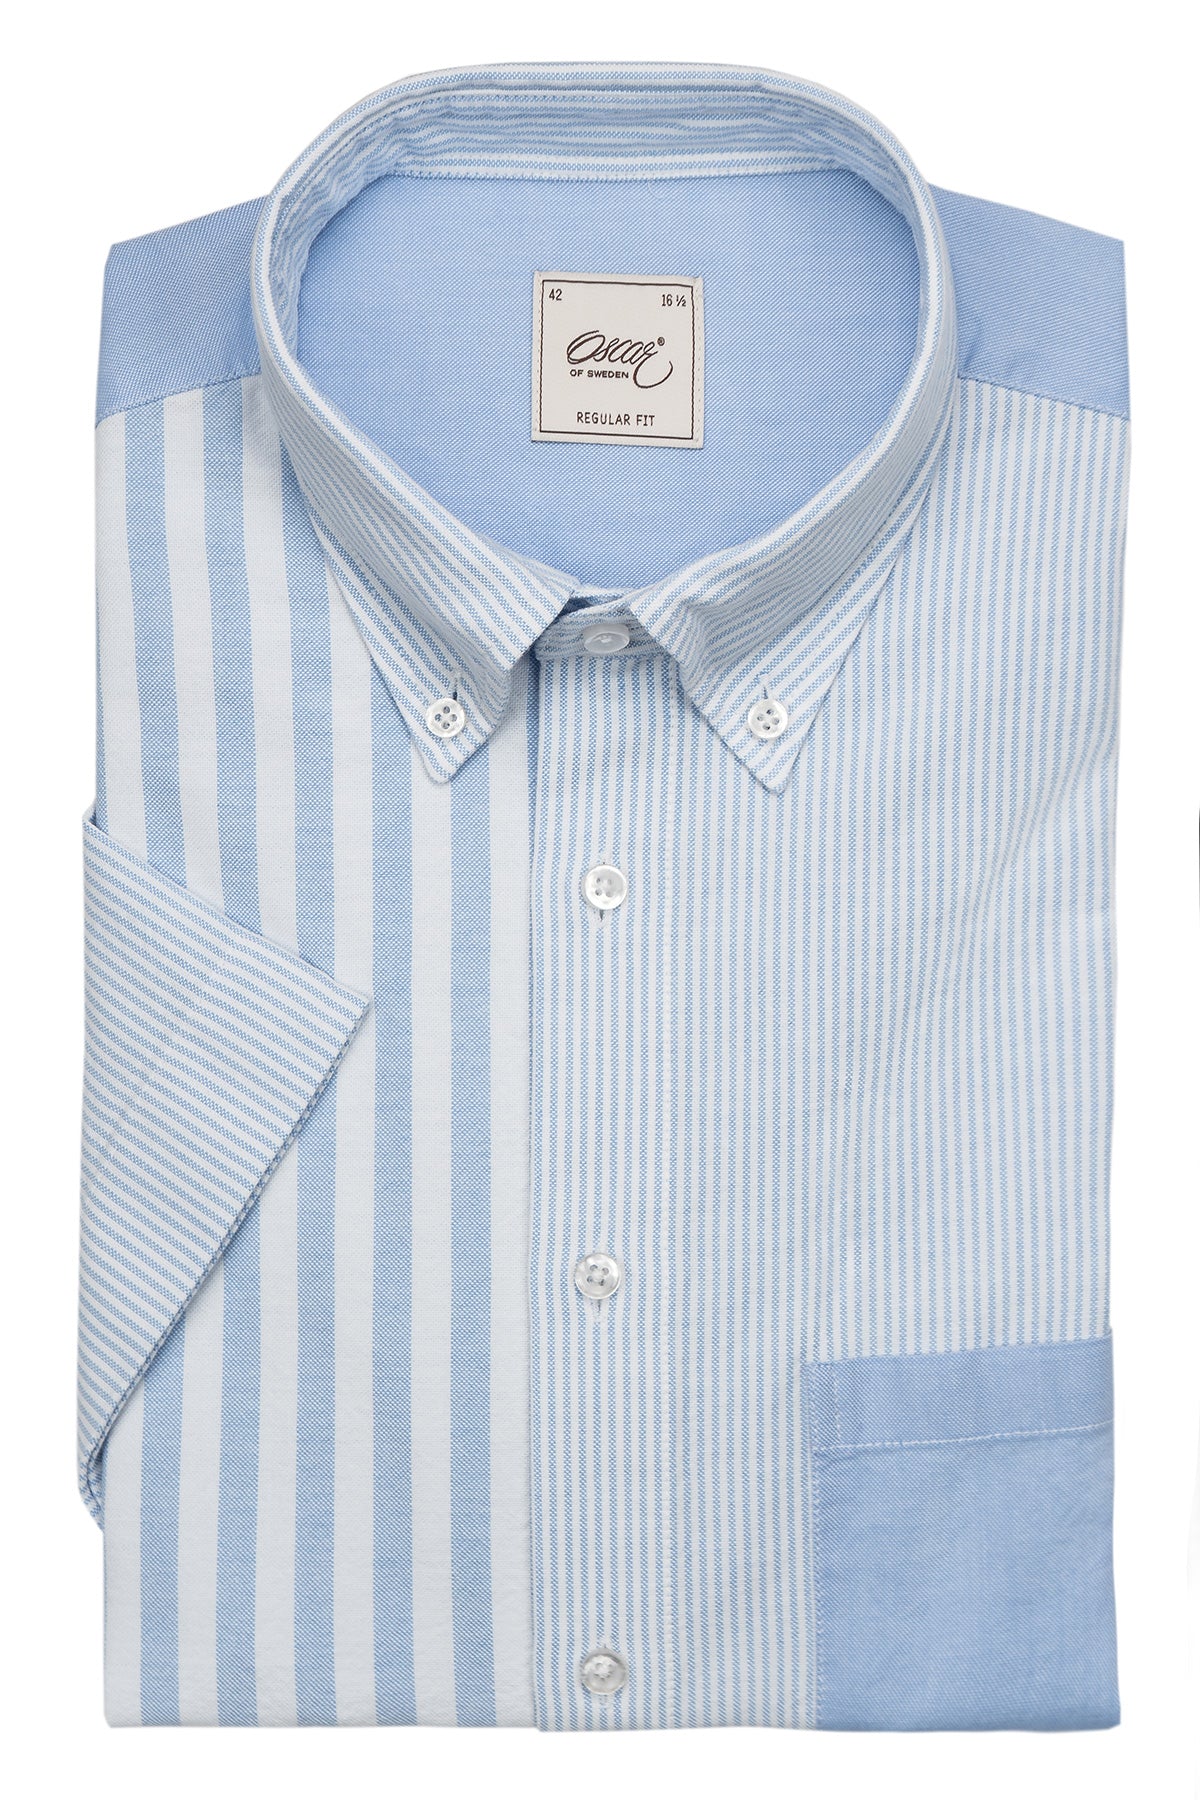 Light blue patchwork short sleeve regular fit shirt